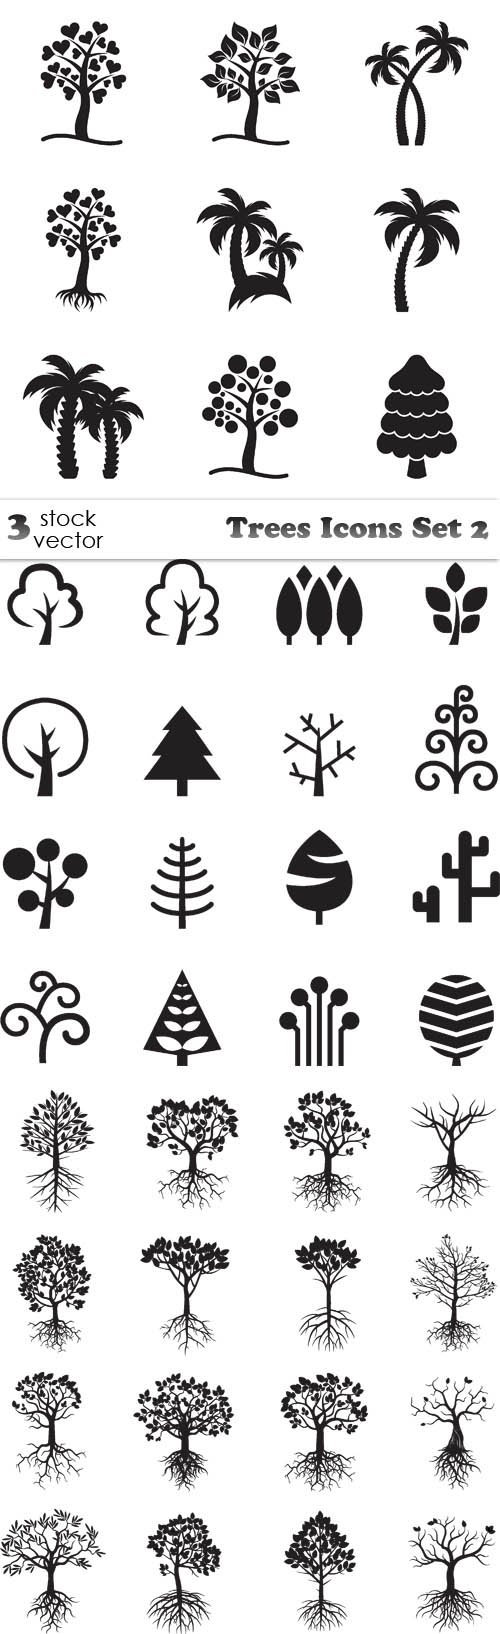 Vectors - Trees Icons Set 2